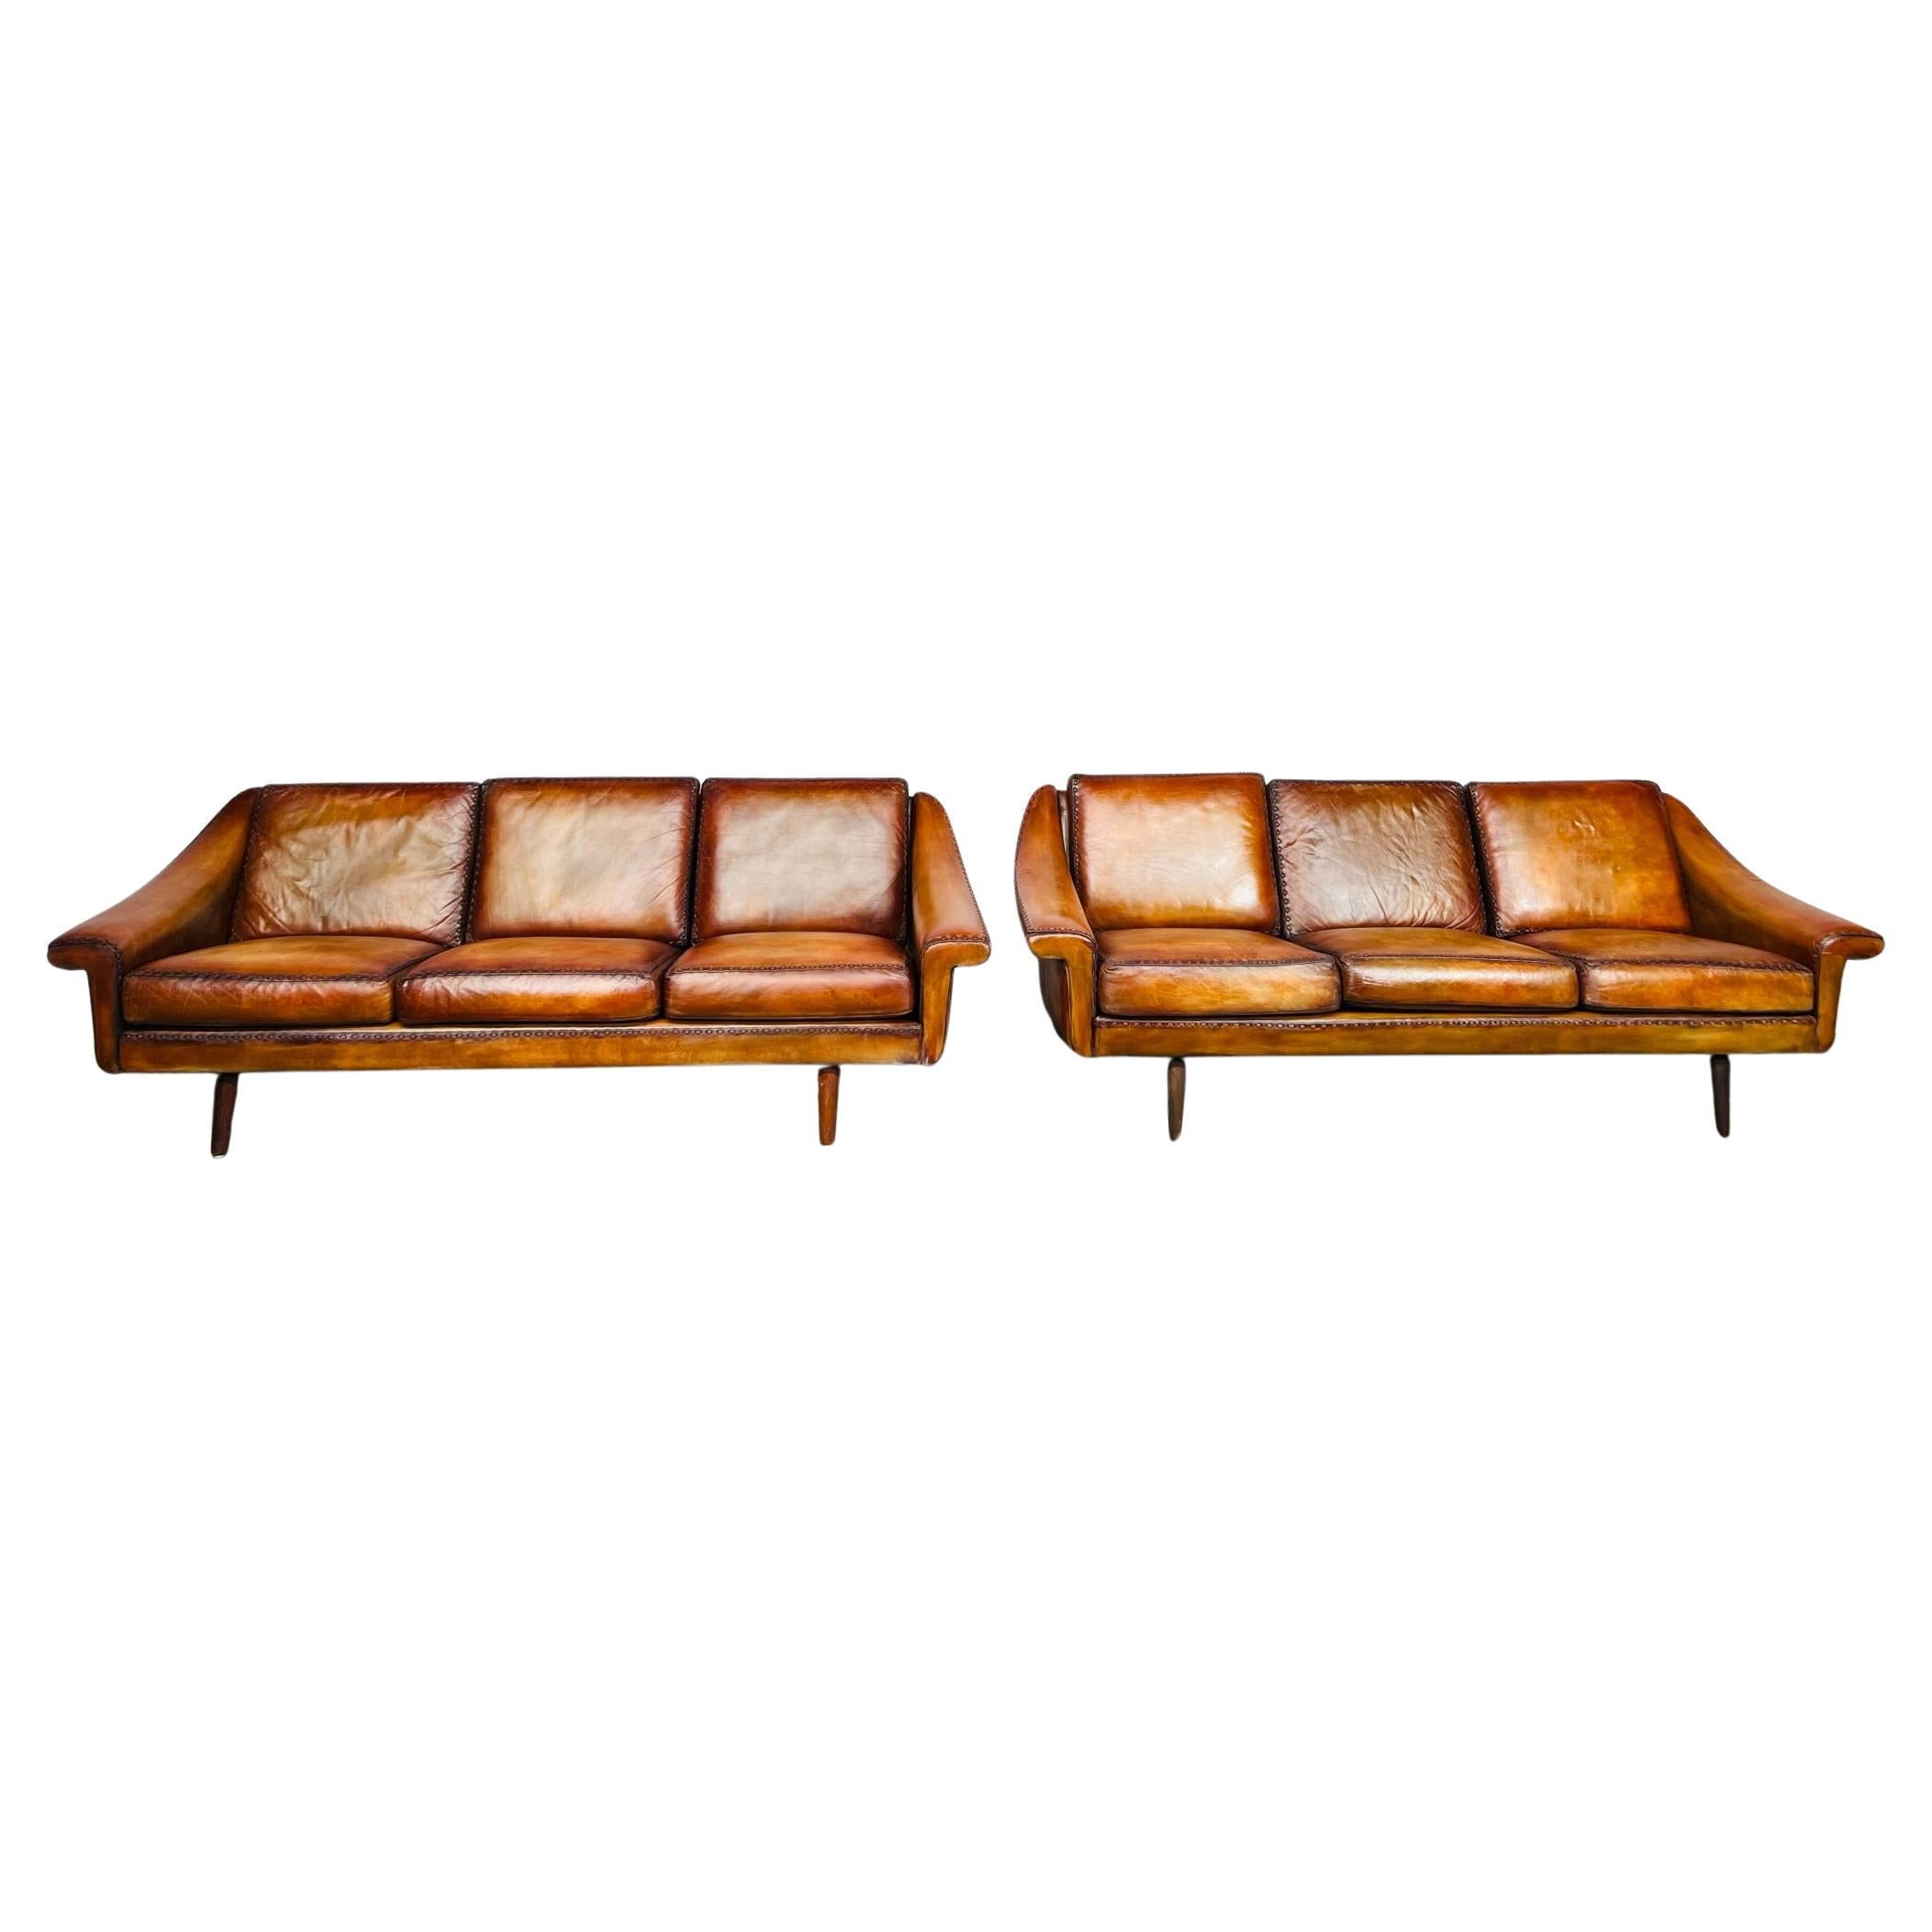 Ein Paar Matador-Leder-Sofa mit 3 Etagen von Aage Christiansen für Eran, 1960er Jahre, #642